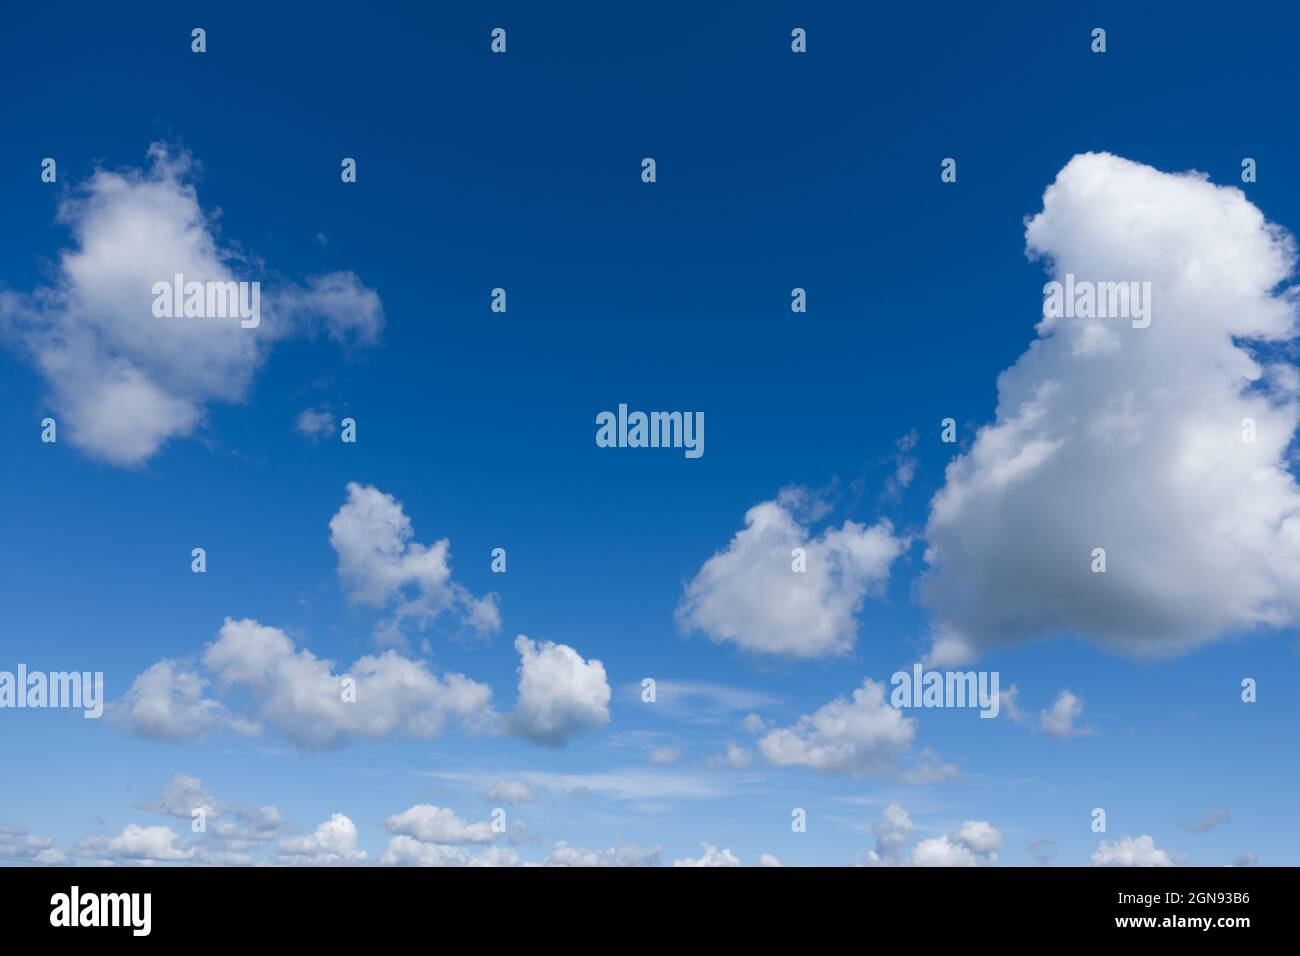 Foto des hellblauen Himmels mit weißen Wolken. Schöner blauer Himmel und weiße Wolken, keine Vögel, kein Lärm. Stockfoto